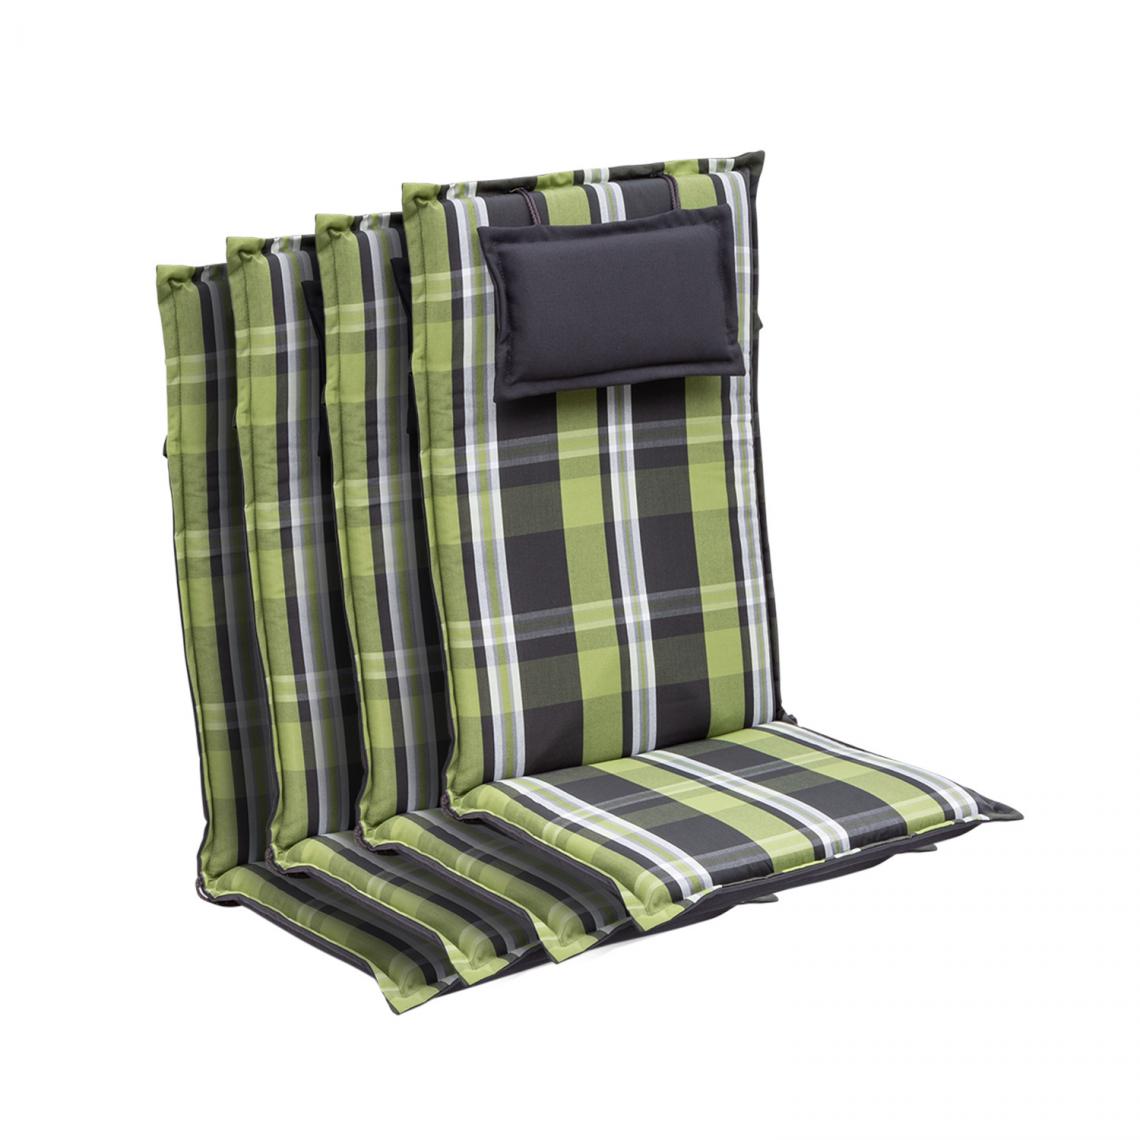 Blumfeldt - Coussin Donau Coussin de fauteuil chaise de jardin à dossier haut en polyester 50x120x6 cm- Vert - Coussins, galettes de jardin